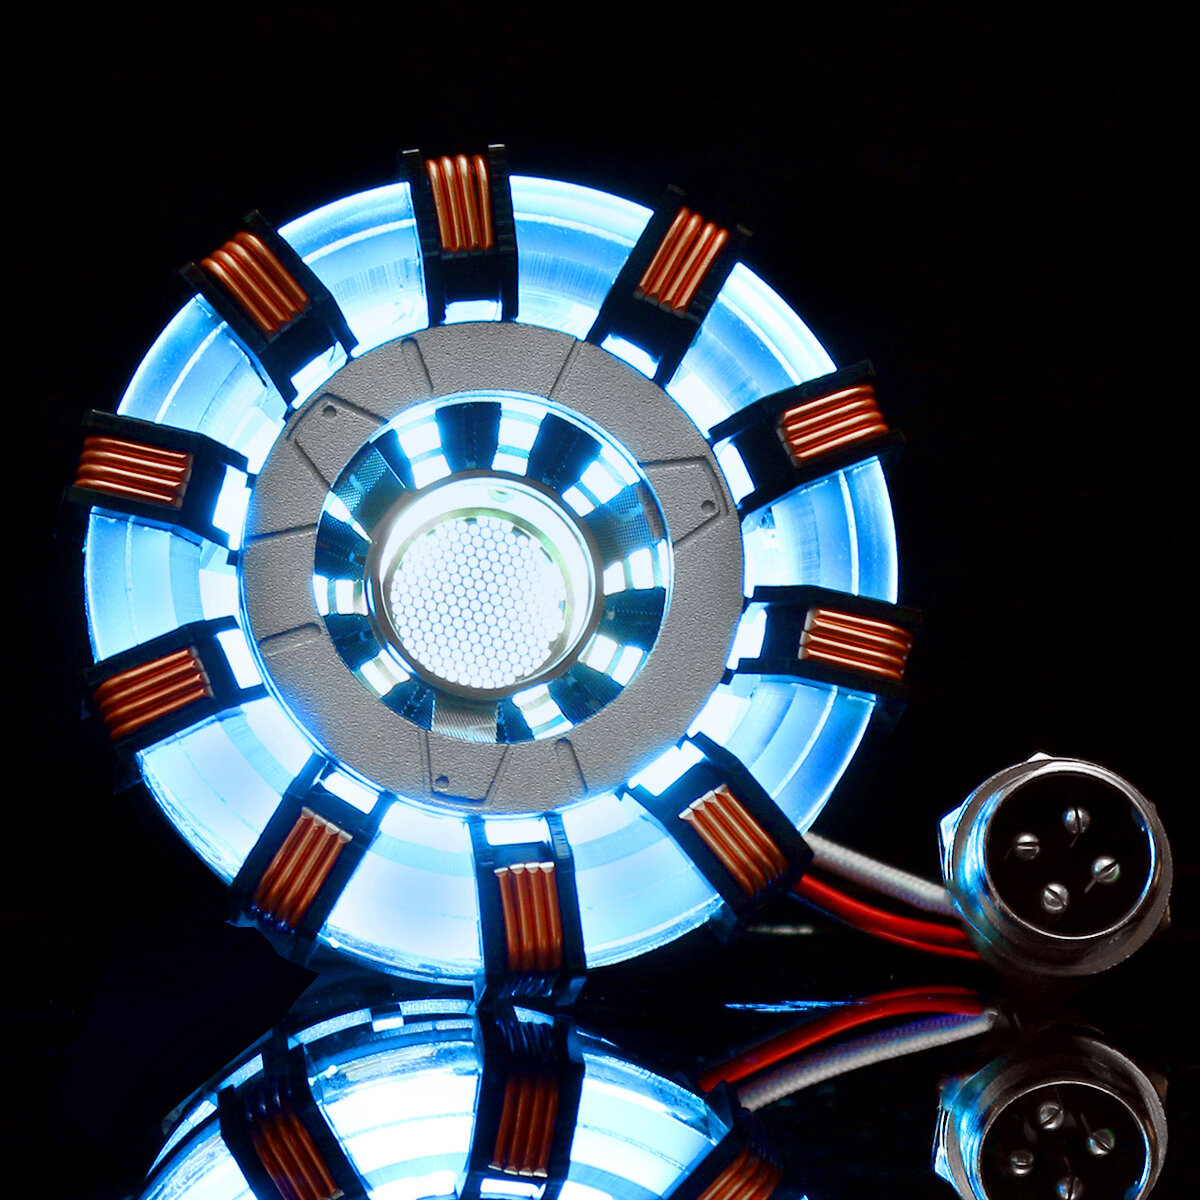 

MK2 Акрил Дистанционный Вер. Tony ARC Reactor Model DIY Набор USB-сундук Лампа Дистанционное Управление Осветительный пр